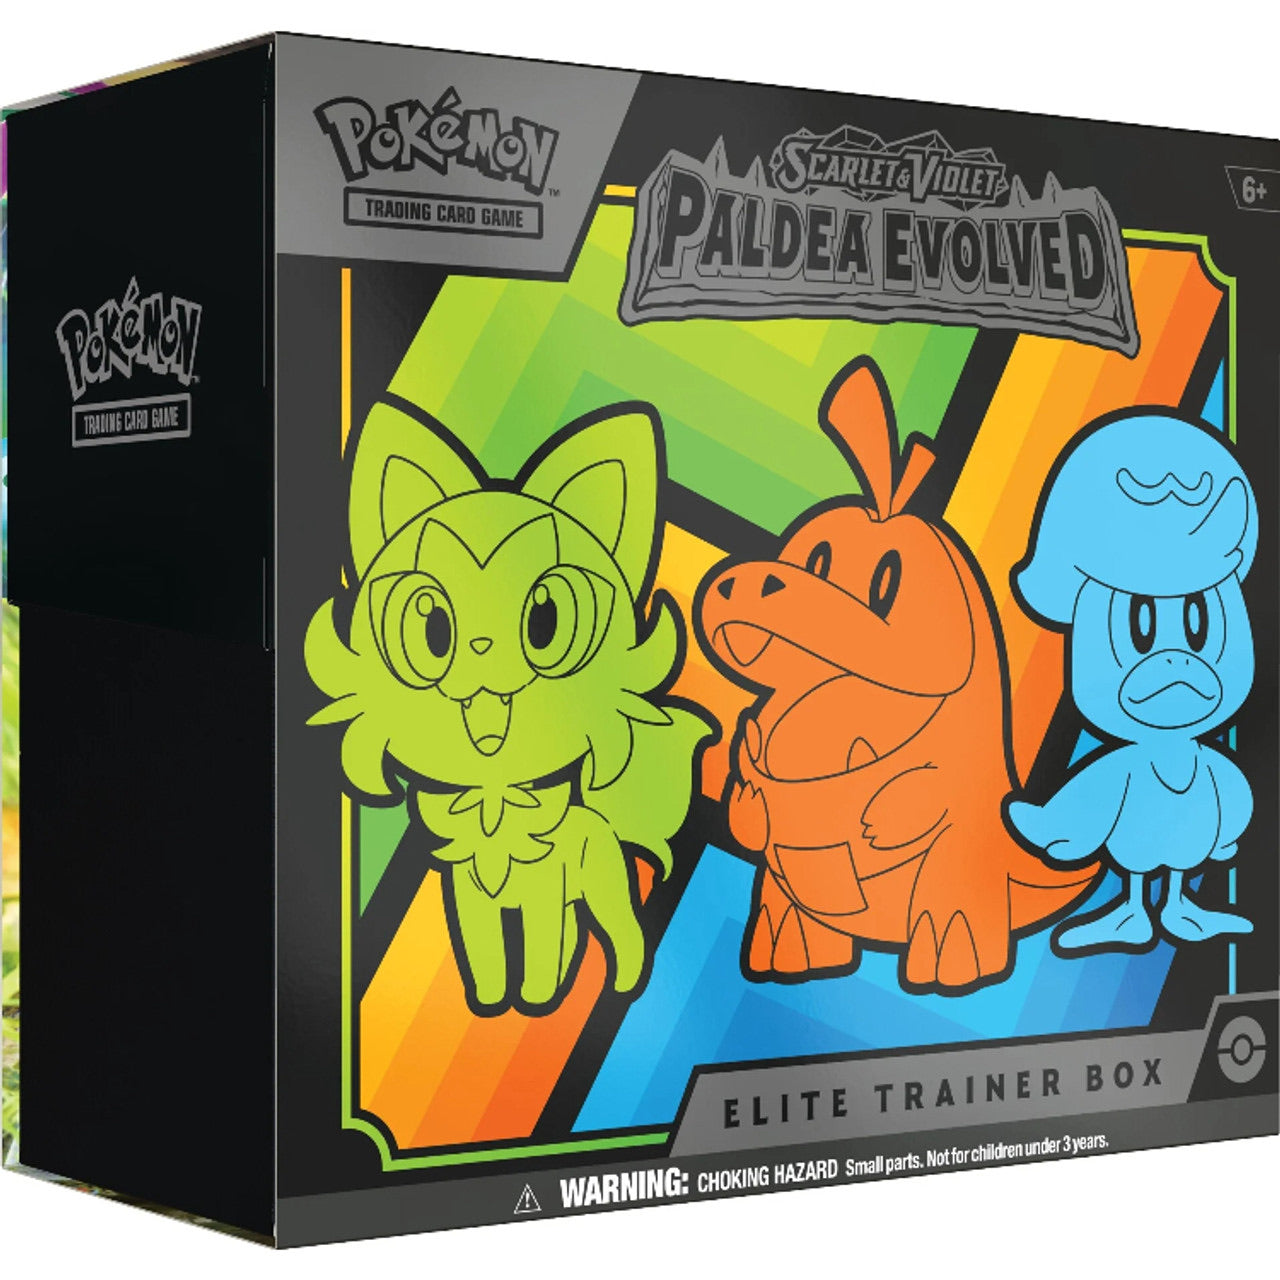 Pokémon Scarlet & Violet Paldea Evolved Elite Trainer Box #185-85366